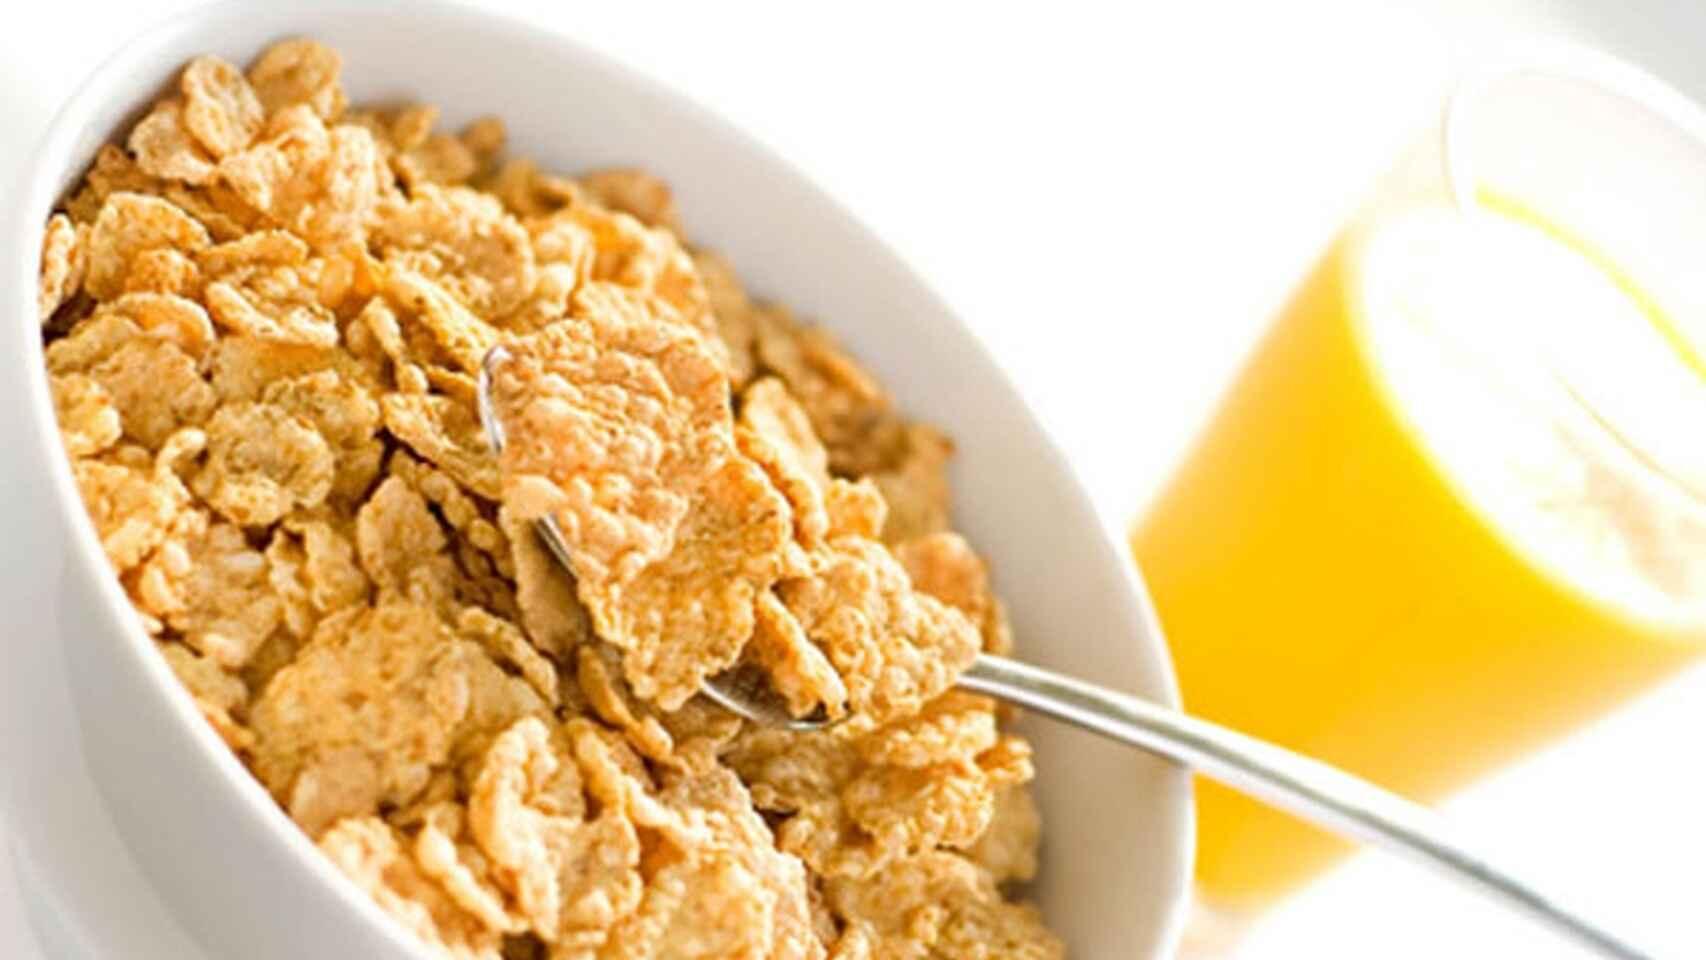 Estos son los cereales más saludables de Mercadona para el